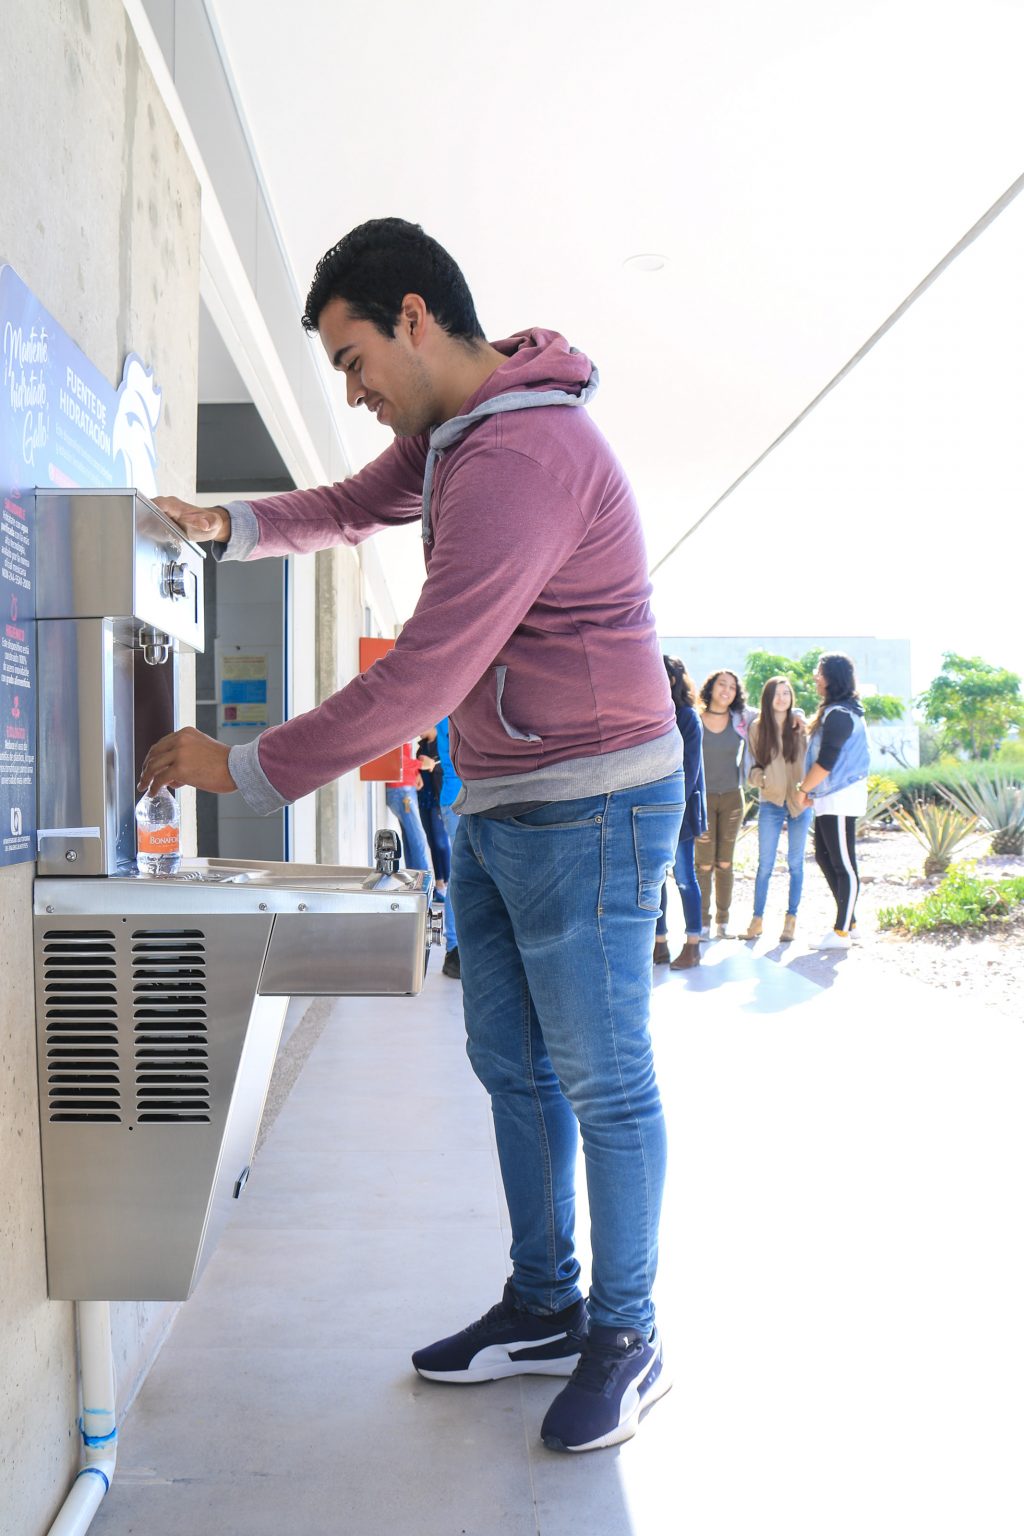 UAA coloca nuevas Fuentes de Hidratación en sus Campus